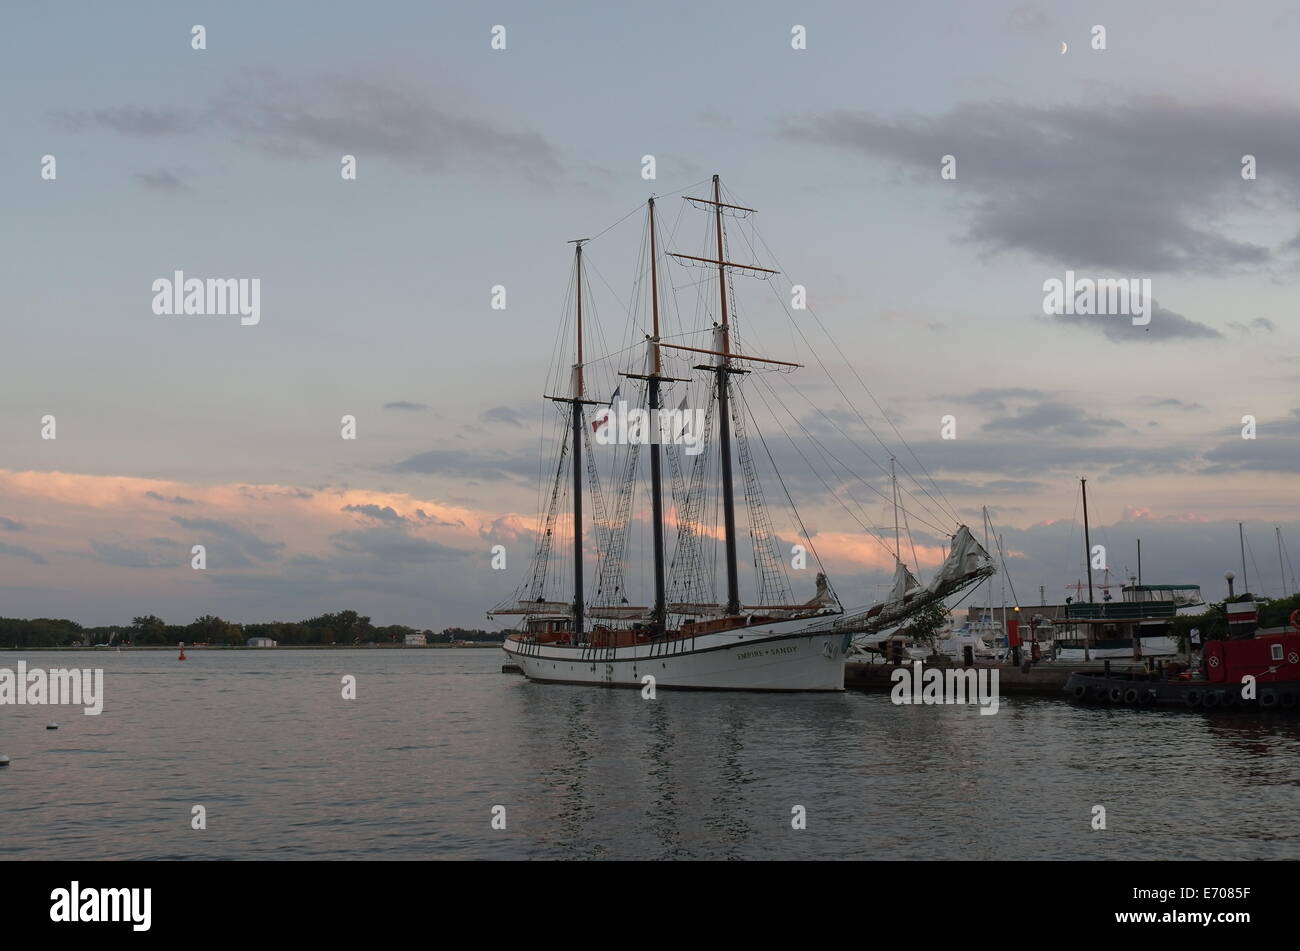 Old sailing ship docked at Toronto, Lake Ontario, Canada Stock Photo